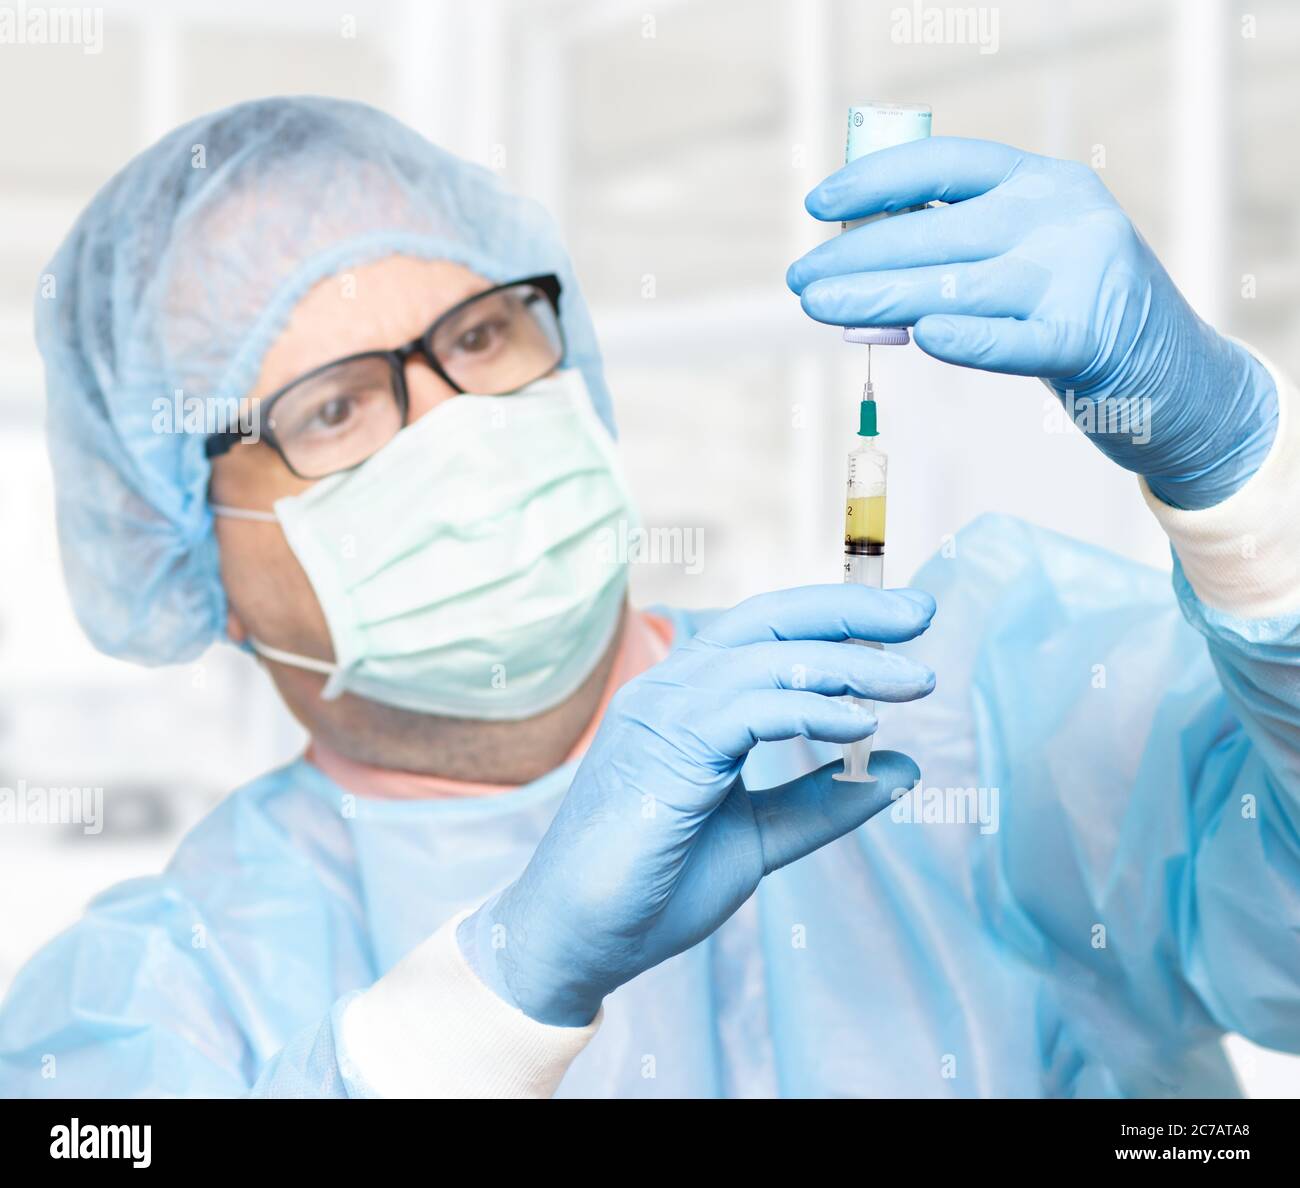 Le médecin prend le médicament d'une bouteille à une injection, se concentre sur les mains, visage flou. Scientifique tenant une seringue et un vaccin. Banque D'Images